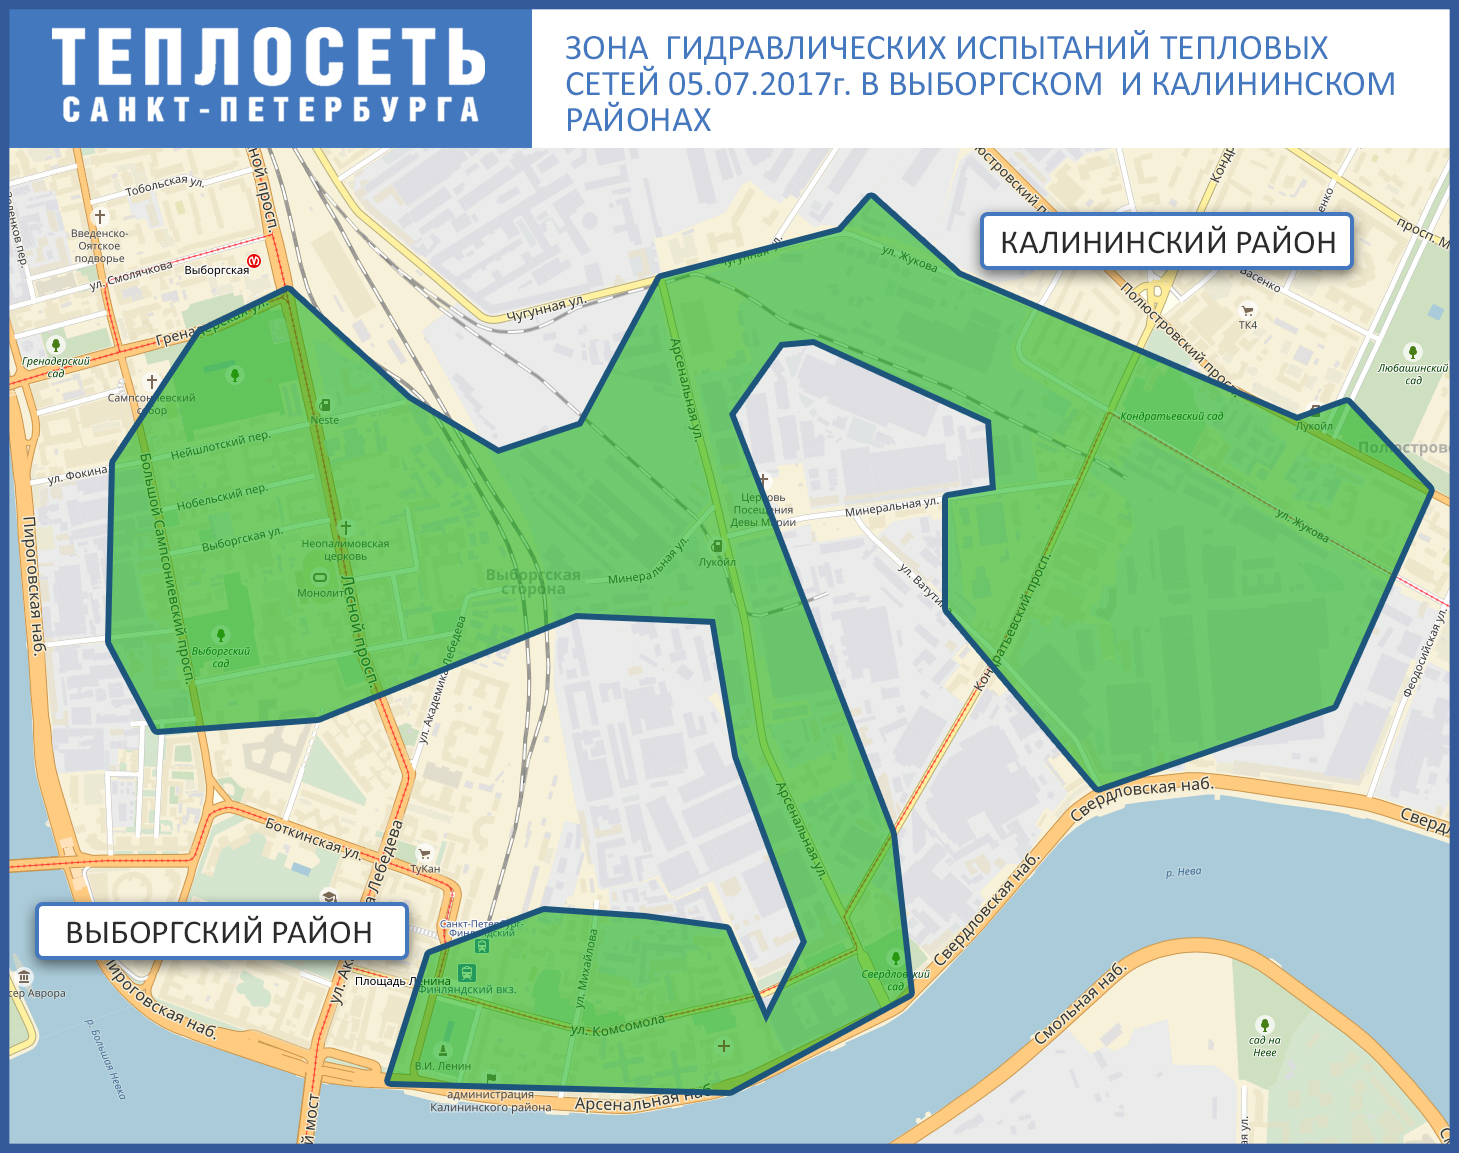 В трех районах Петербурга проходят испытания теплосетей